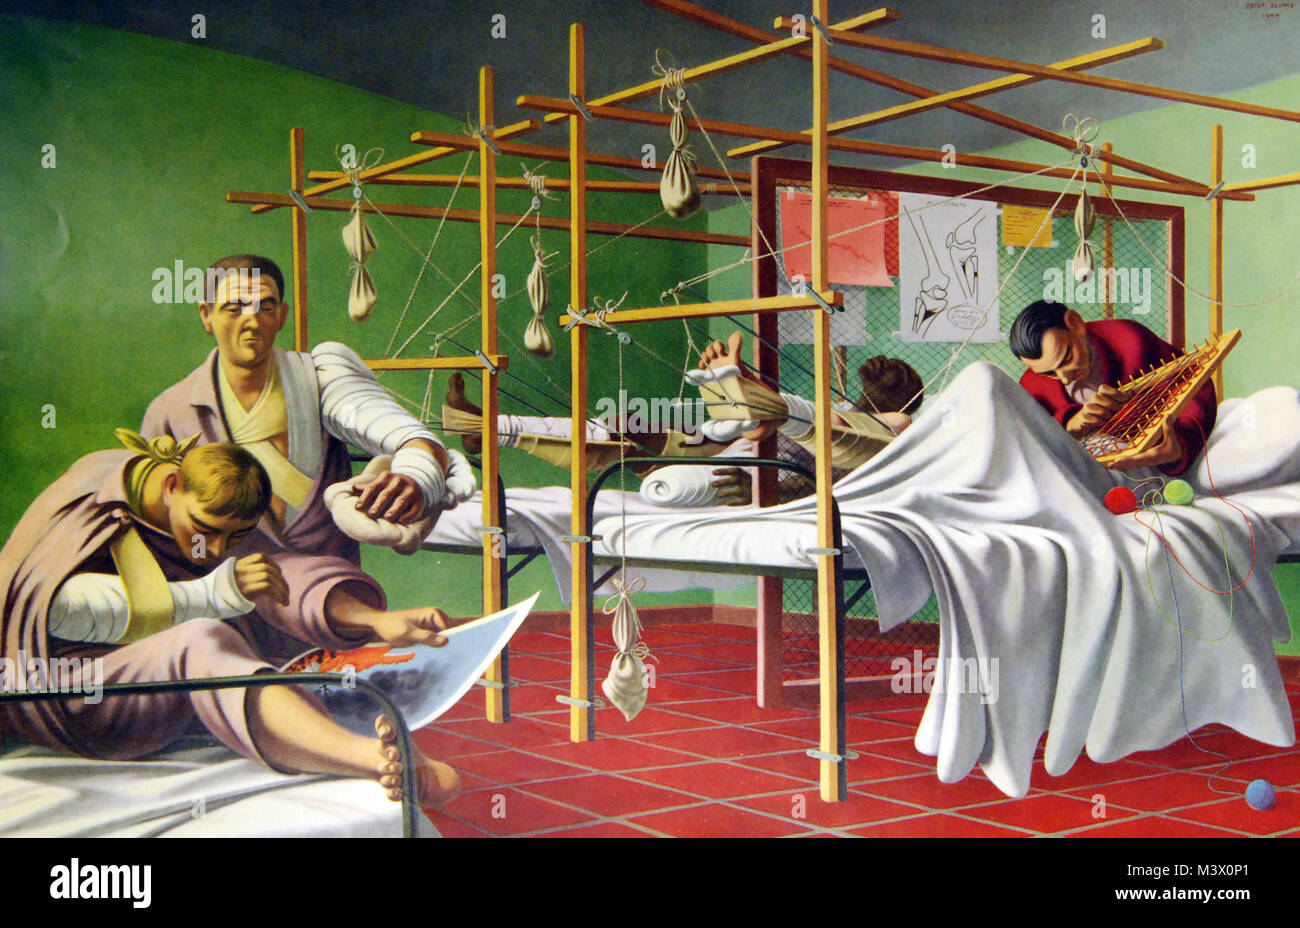 Lotto-7409-14: WWII: dipinti di esercito di medicina. "Frattura Ward". Illustrazione di Peter Blume. Abbott Laboratories. La cortesia della Biblioteca del Congresso. (2018/02/02). Lotto-7409-14 26171899808 o Foto Stock